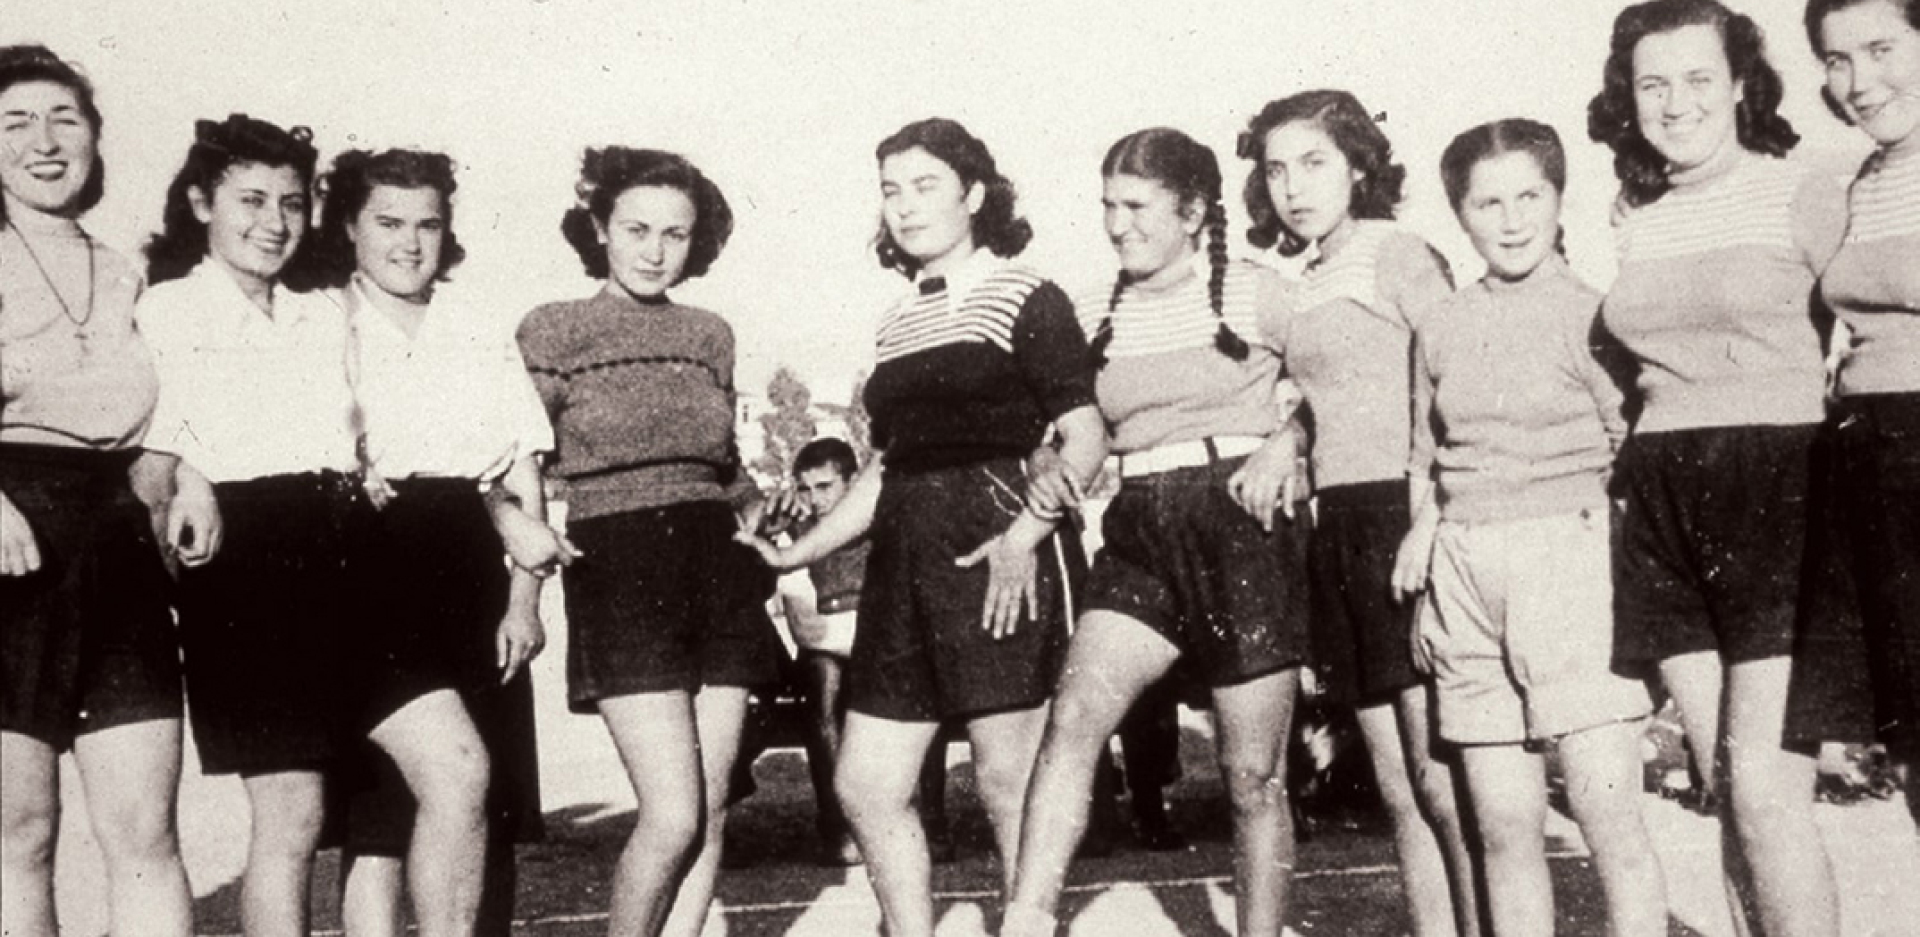 Η ομάδα βόλεϊ ΑΟΝΣ τη δεκαετία του 1930.